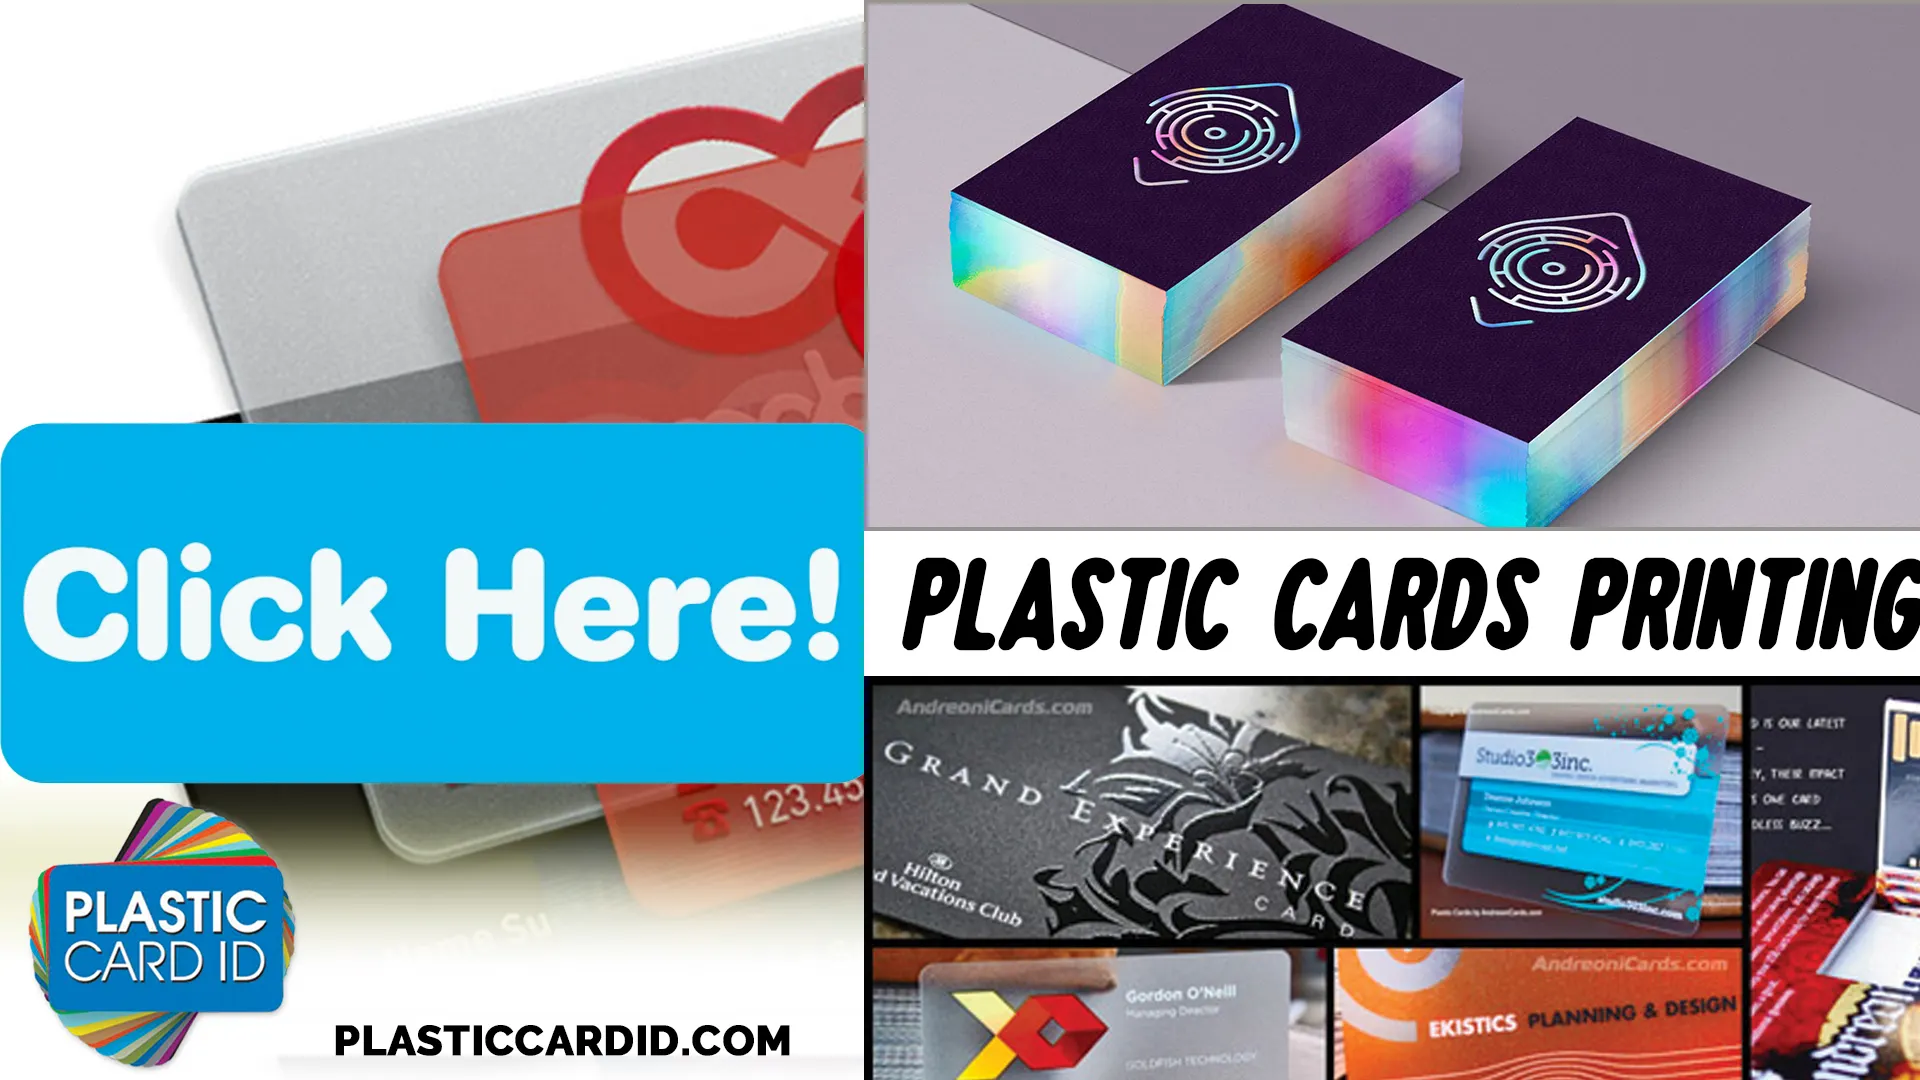 Maximizing Business Value with Premium Plastic Cards